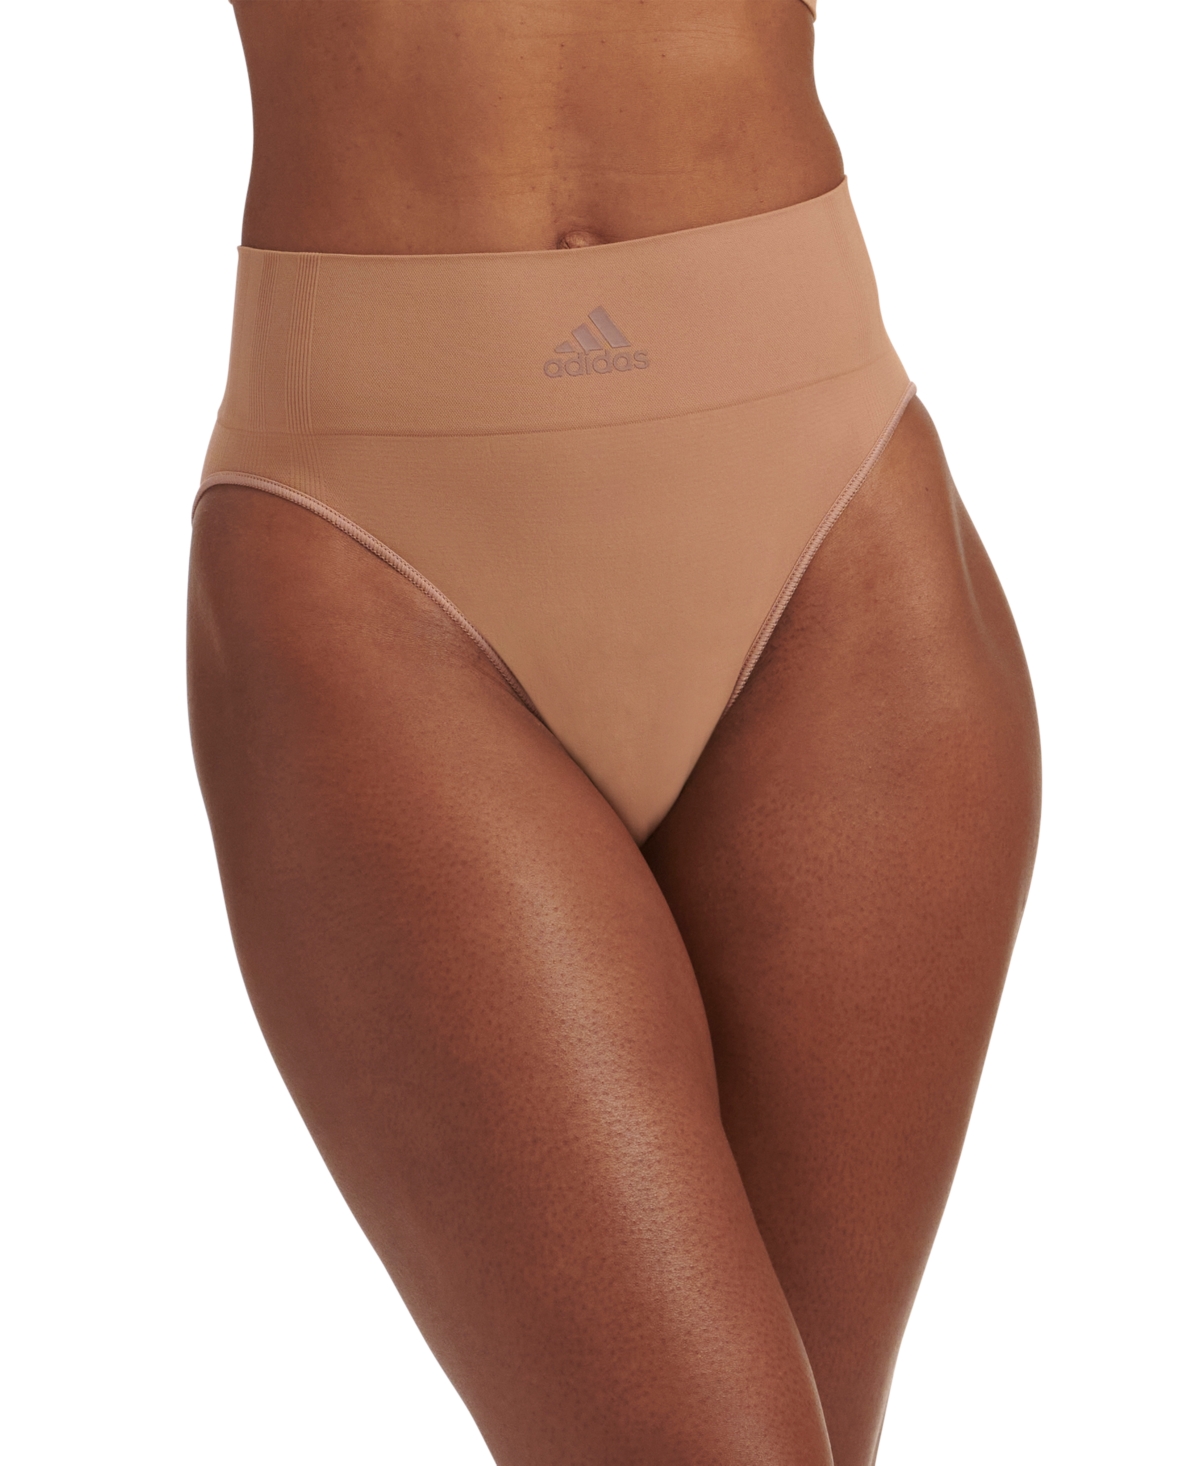 Adidas Originals Intimates Women's 720 Degree Stretch Brief Underwear 4a4h62 In Toasted Almond